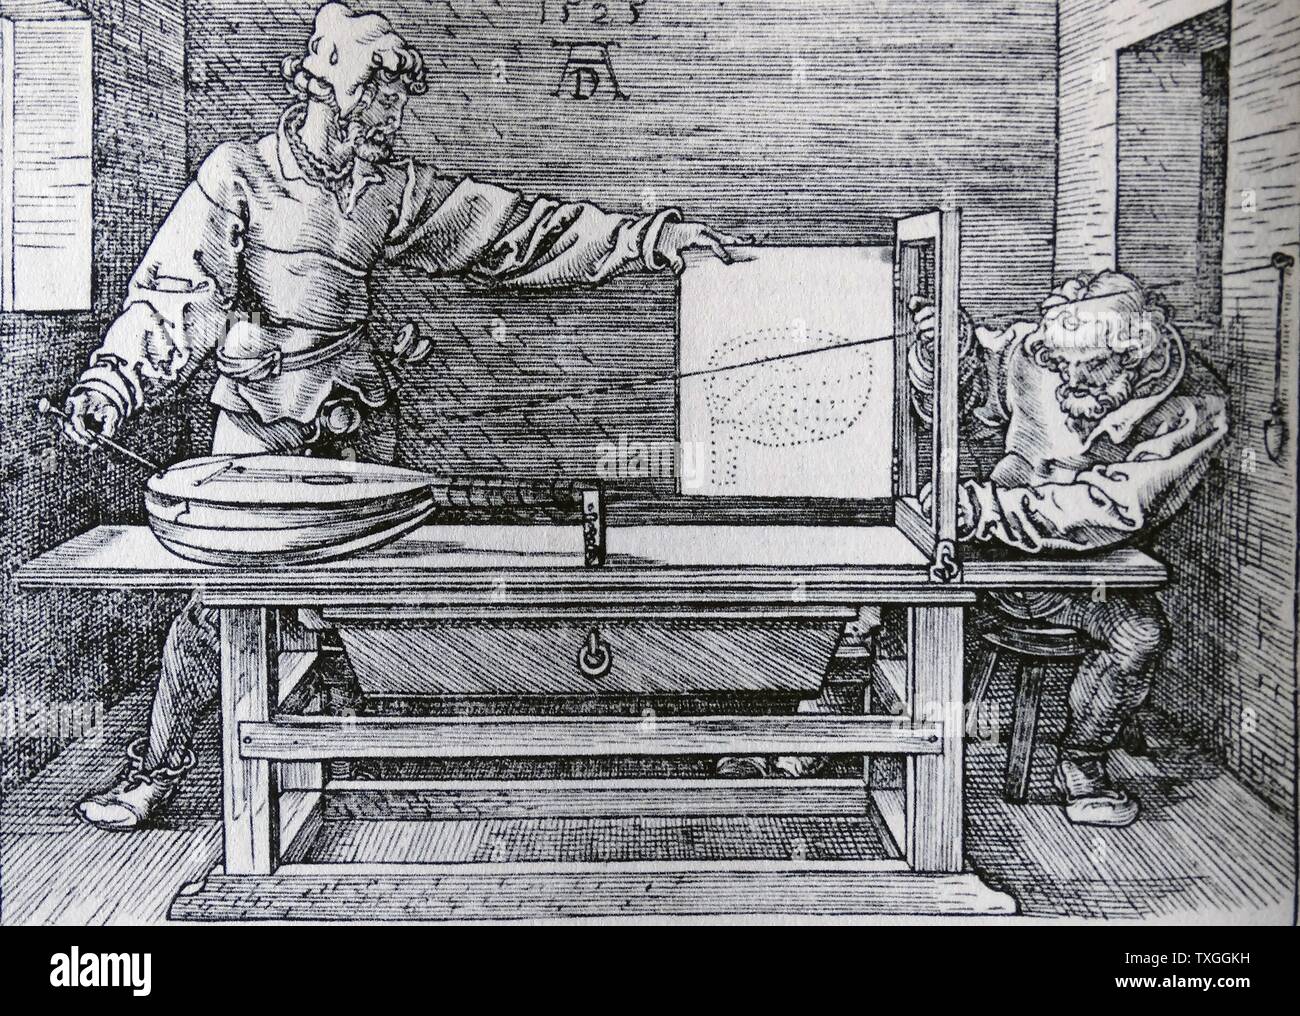 Holzschnitt mit dem Titel "Demonstration der Prespective Zeichnen einer Laute" von Albrecht Dürer (1471-1528) Maler, Grafiker und Theoretiker der deutschen Renaissance. Datiert aus dem 16. Jahrhundert Stockfoto